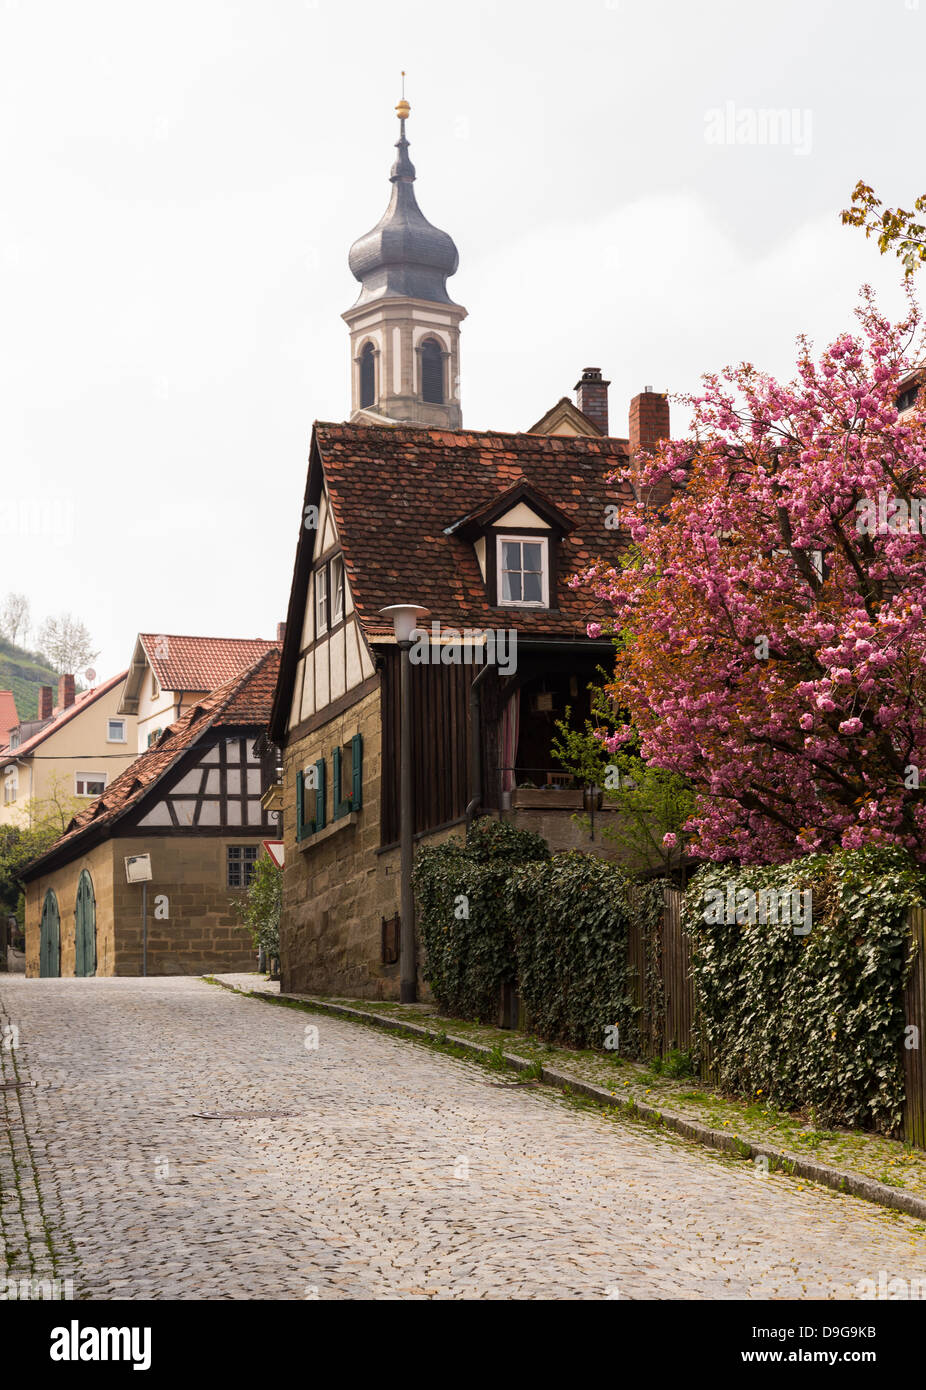 Village-rue à Castell Allemagne montrant l'ancien ornate church et routes pavées Banque D'Images